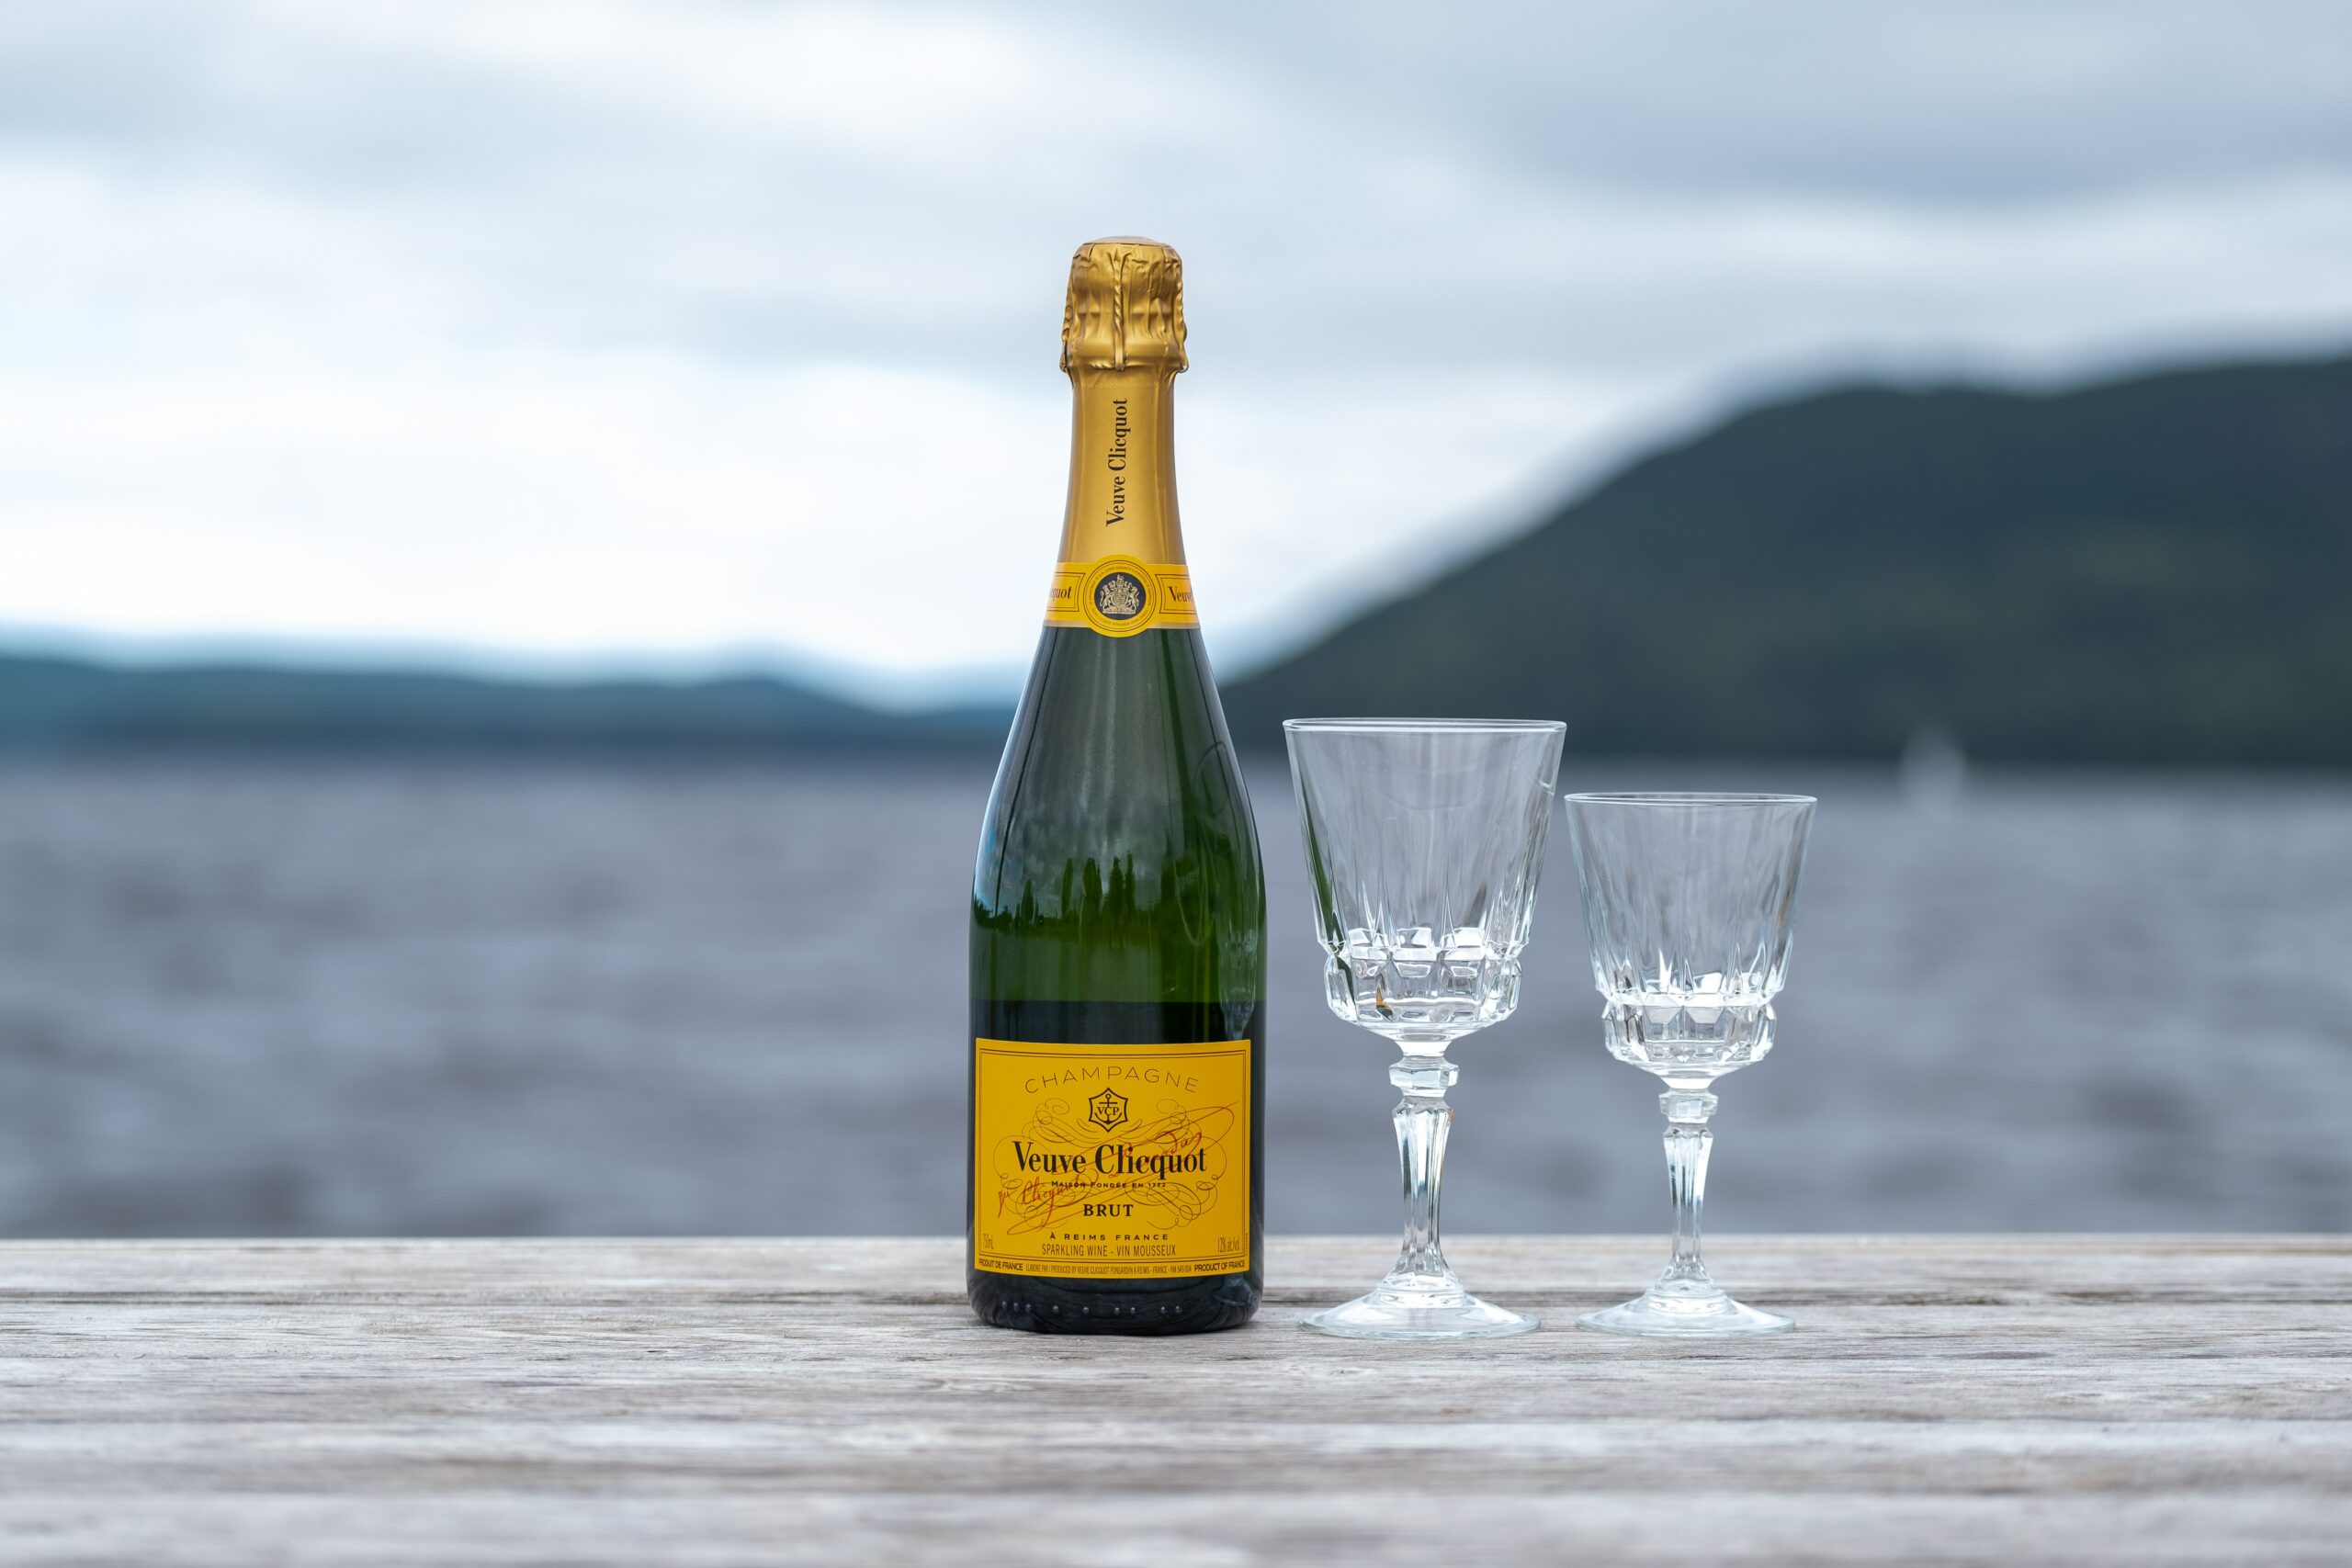 Az özvegy üzletasszony, aki megismertette a világgal a champagne-t – Madame Clicquot története - Dining Guide